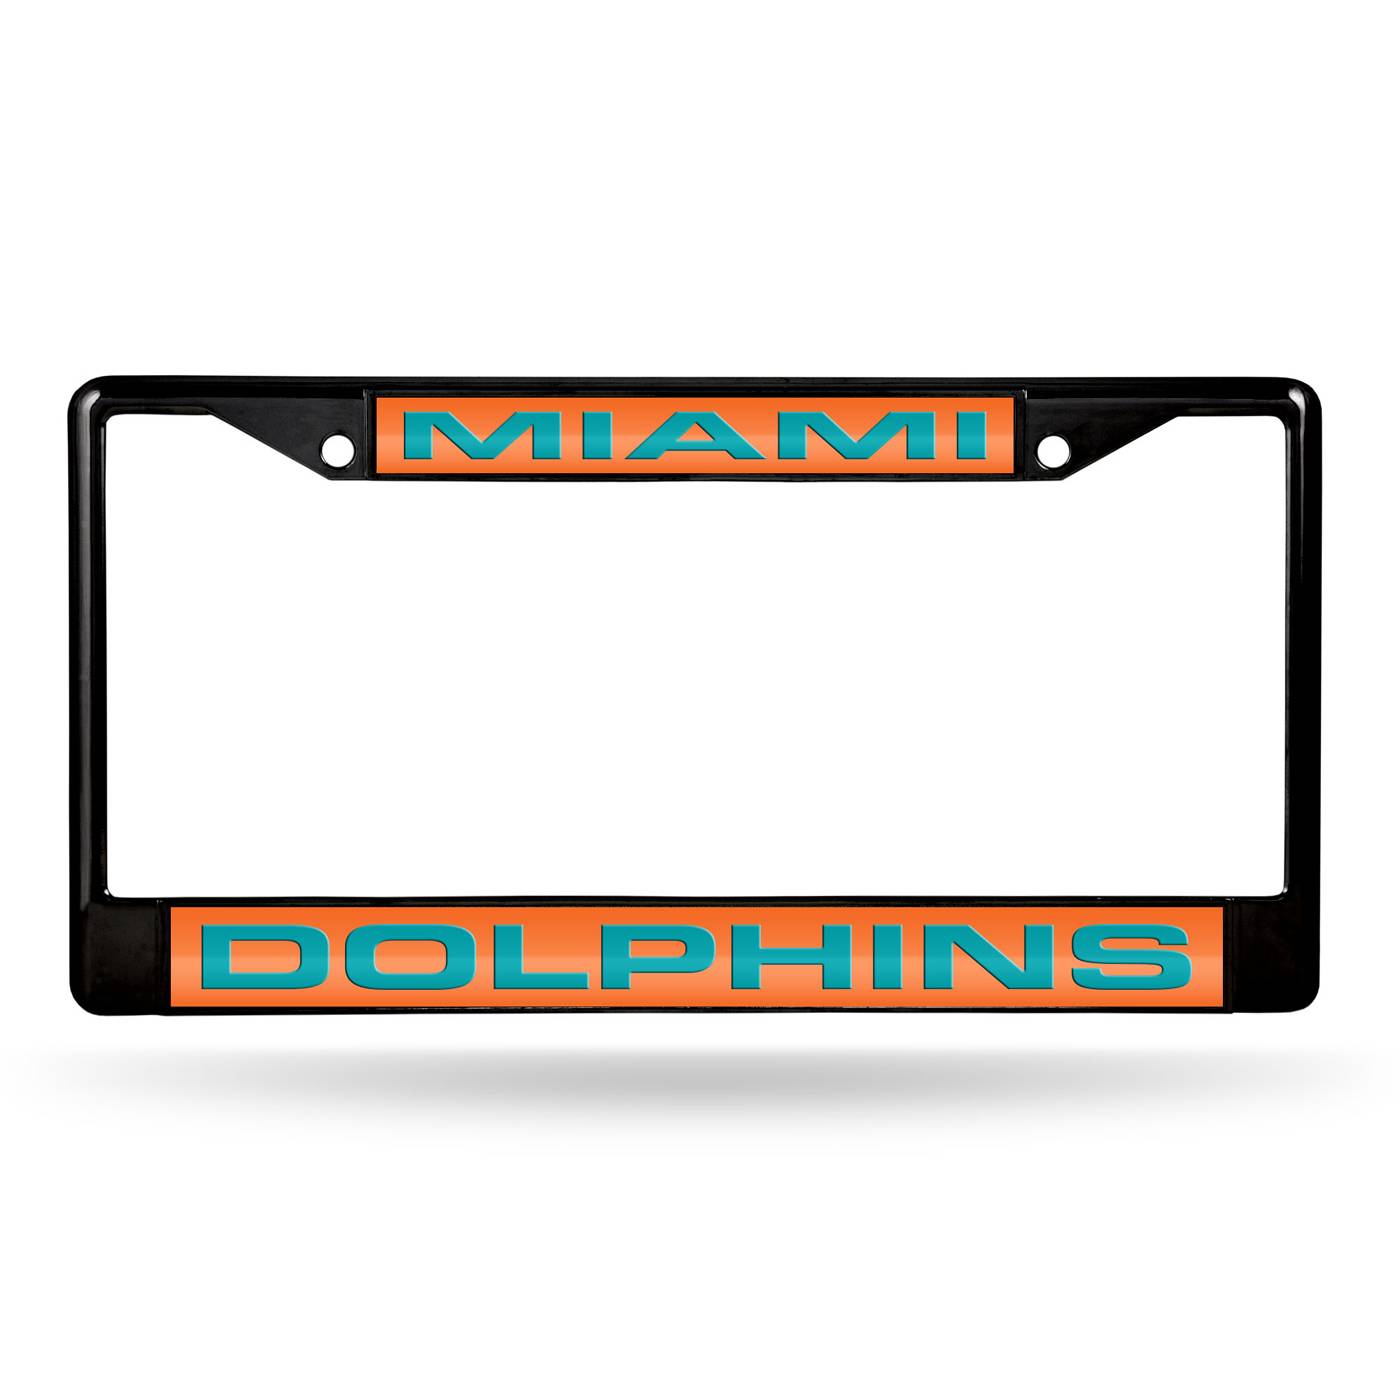 miami dolphins license plate frame amazon